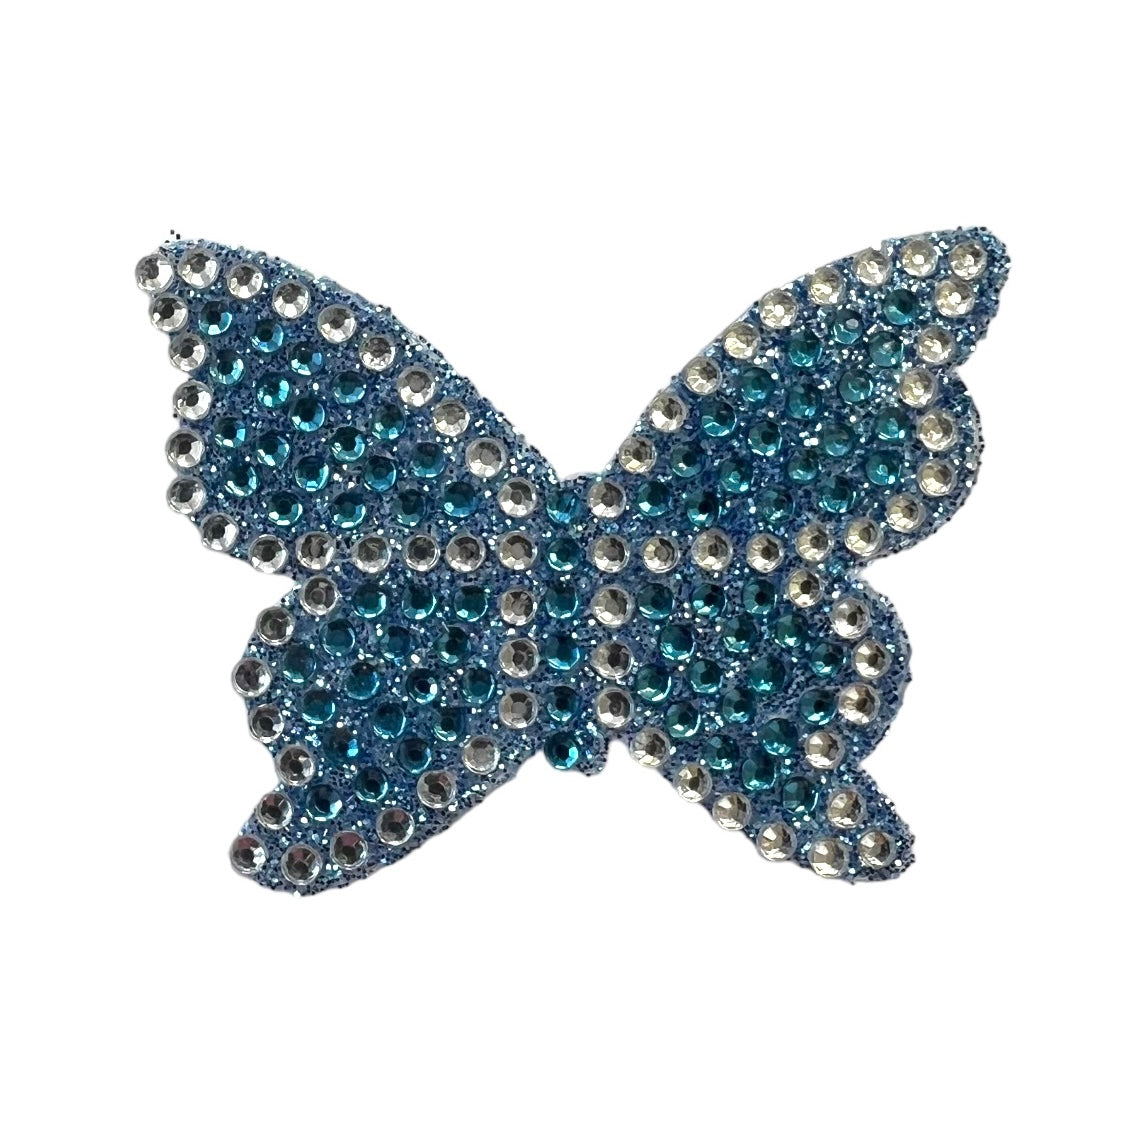 Rhinestone Butterfly Stickers